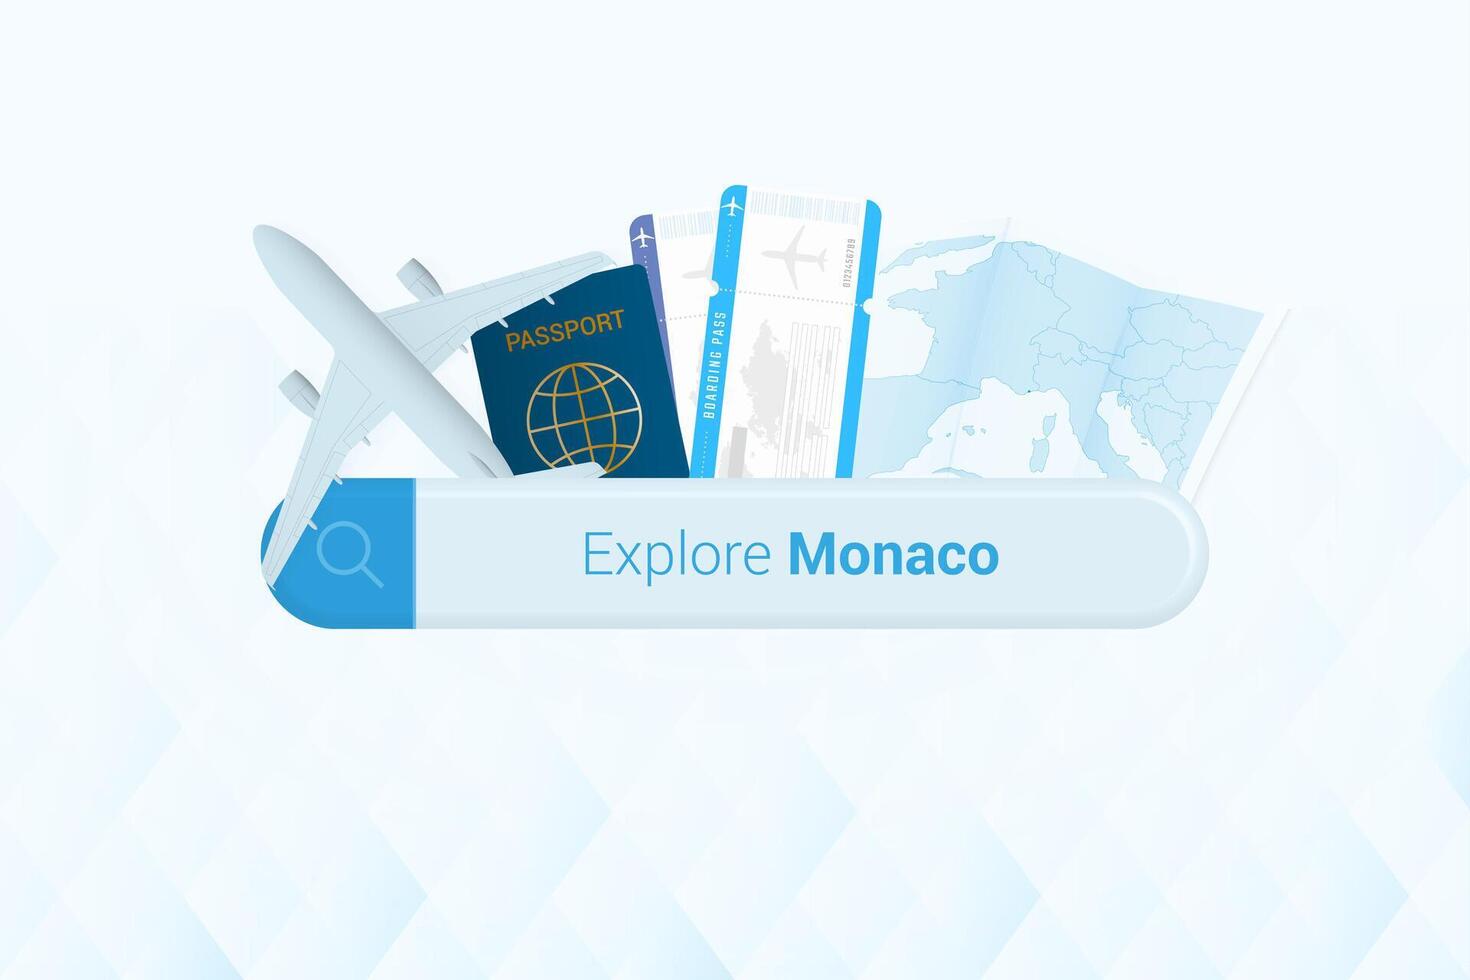 buscando Entradas a Mónaco o viaje destino en Mónaco. buscando bar con avión, pasaporte, embarque aprobar, Entradas y mapa. vector